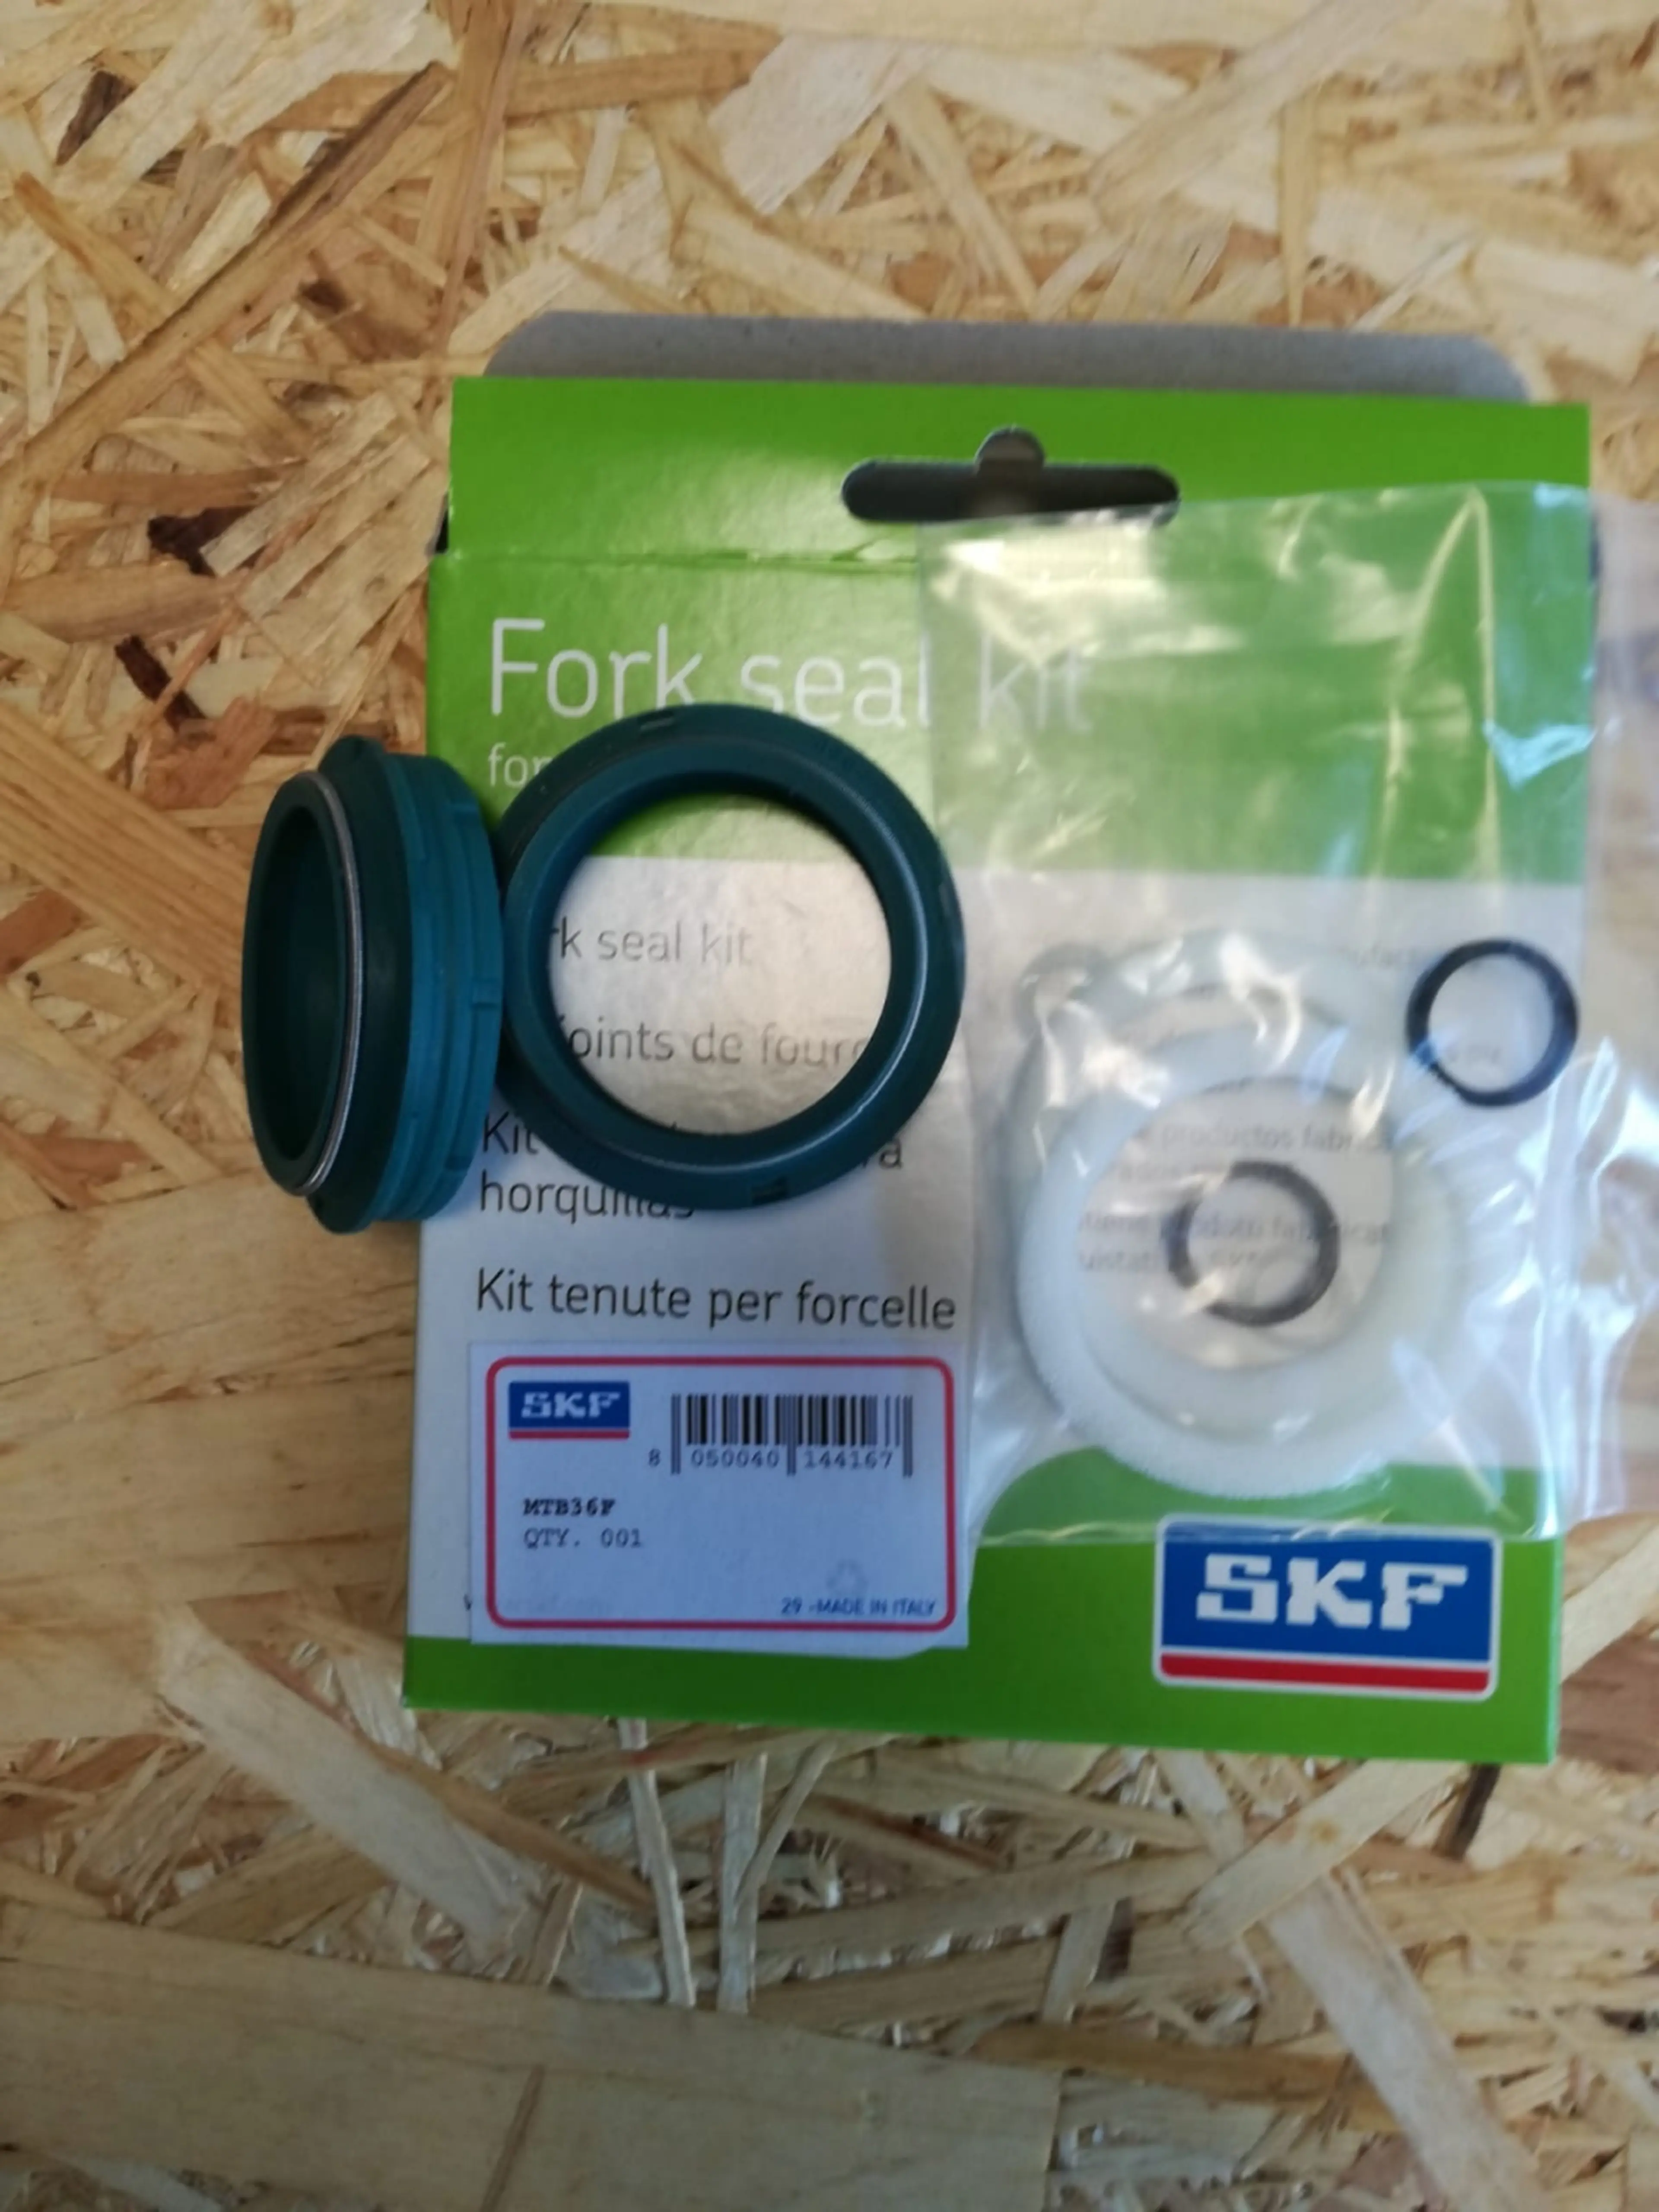 Image Kit reparatie skf furca fox MTB36F